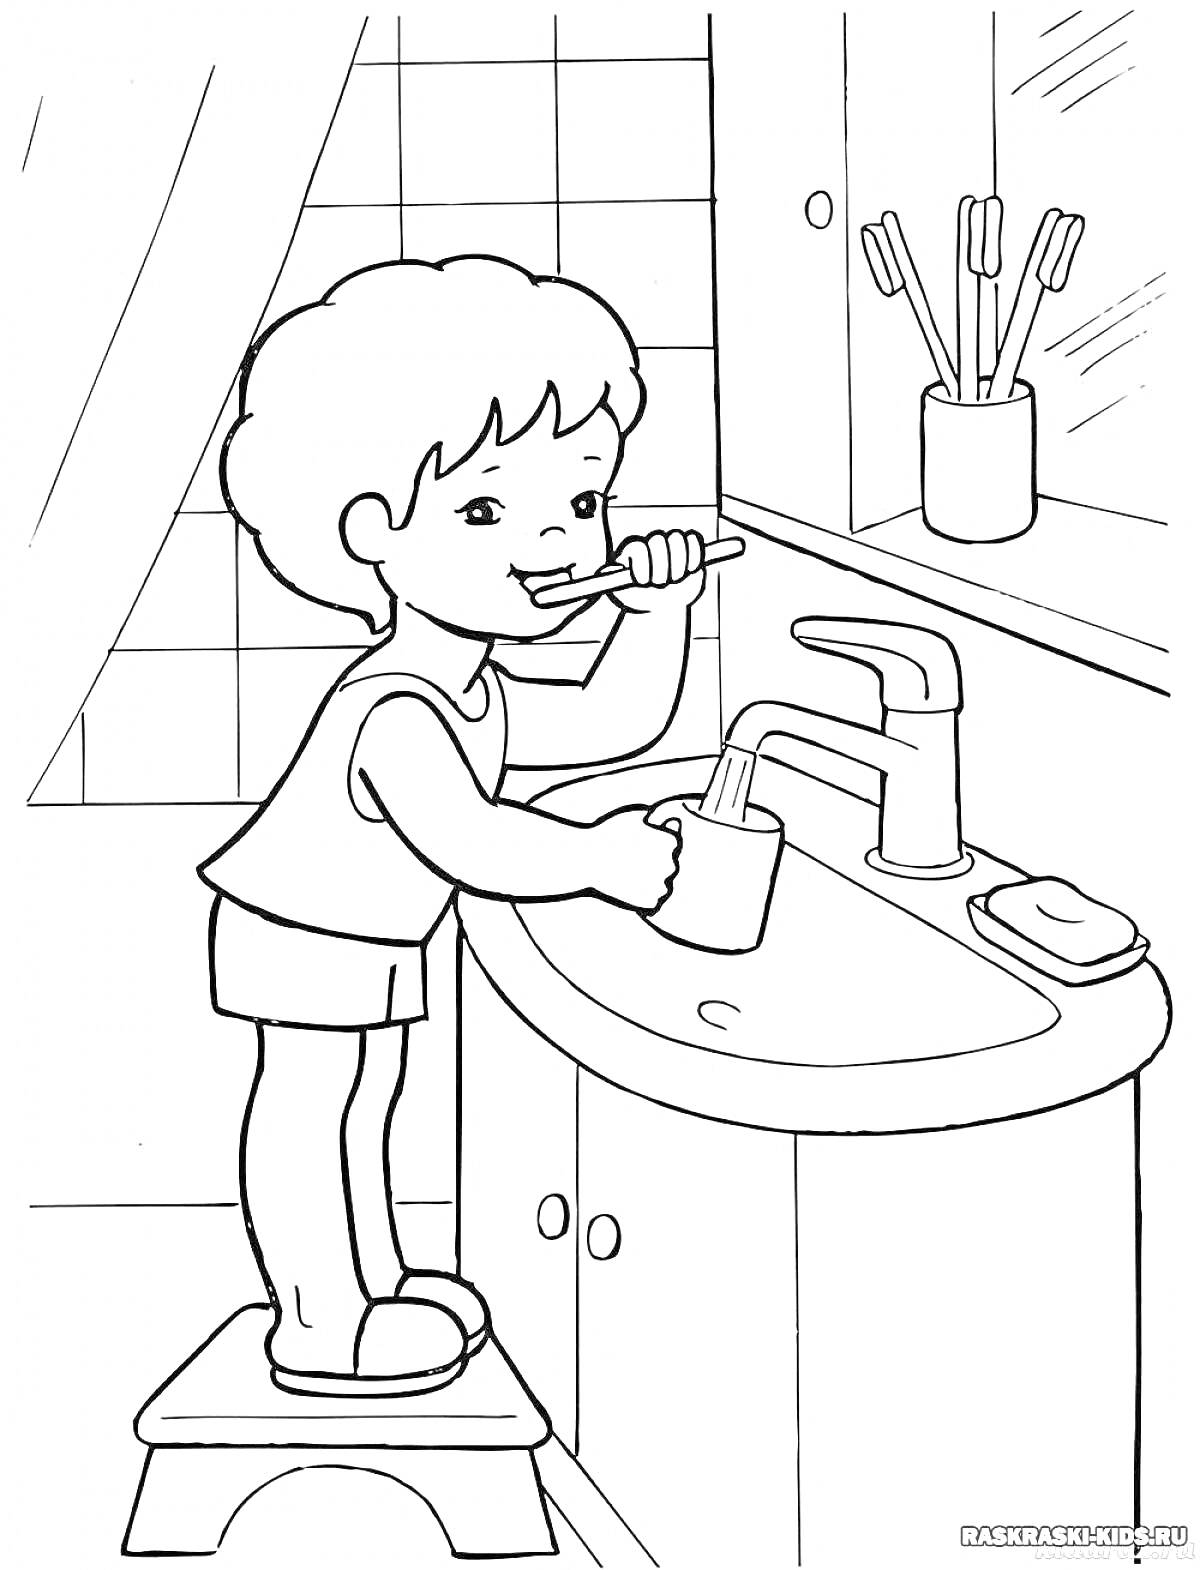 На раскраске изображено: Ребенок, Чистить зубы, Ванная комната, Раковина, Зубная щетка, Мыло, Здоровый образ жизни, Уход за зубами, Личная гигиена